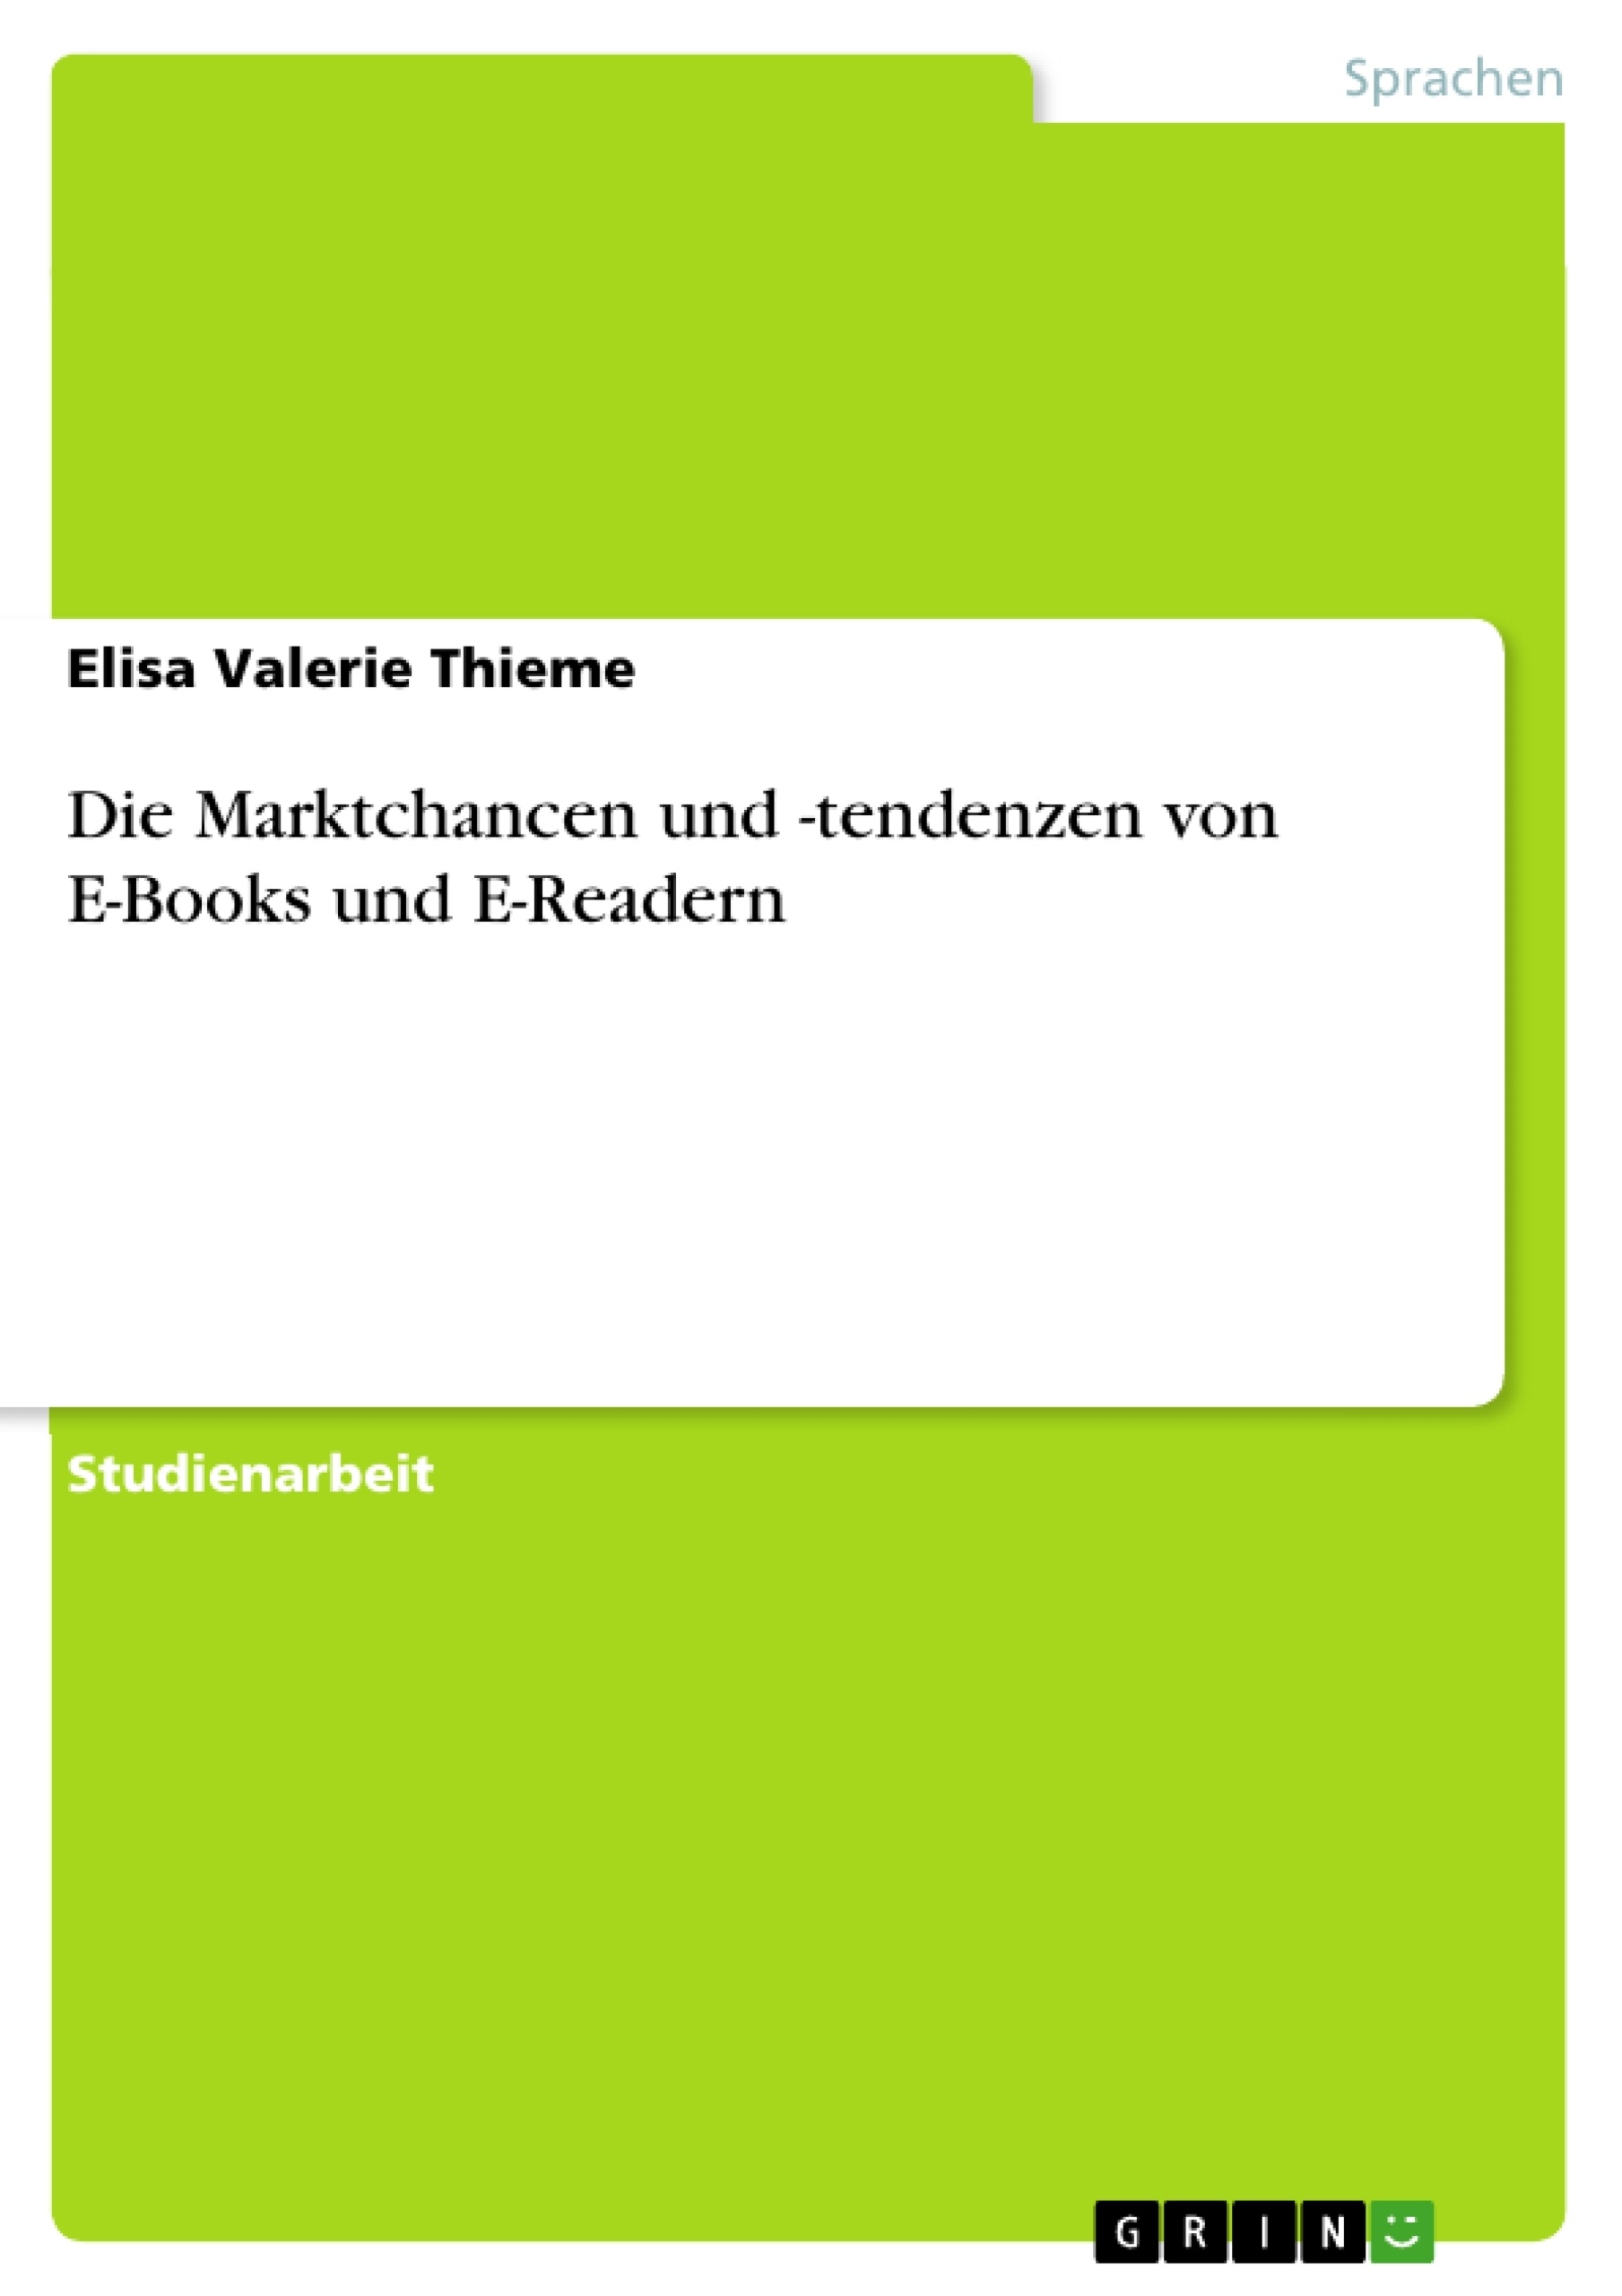 Título: Die Marktchancen und -tendenzen von E-Books und E-Readern